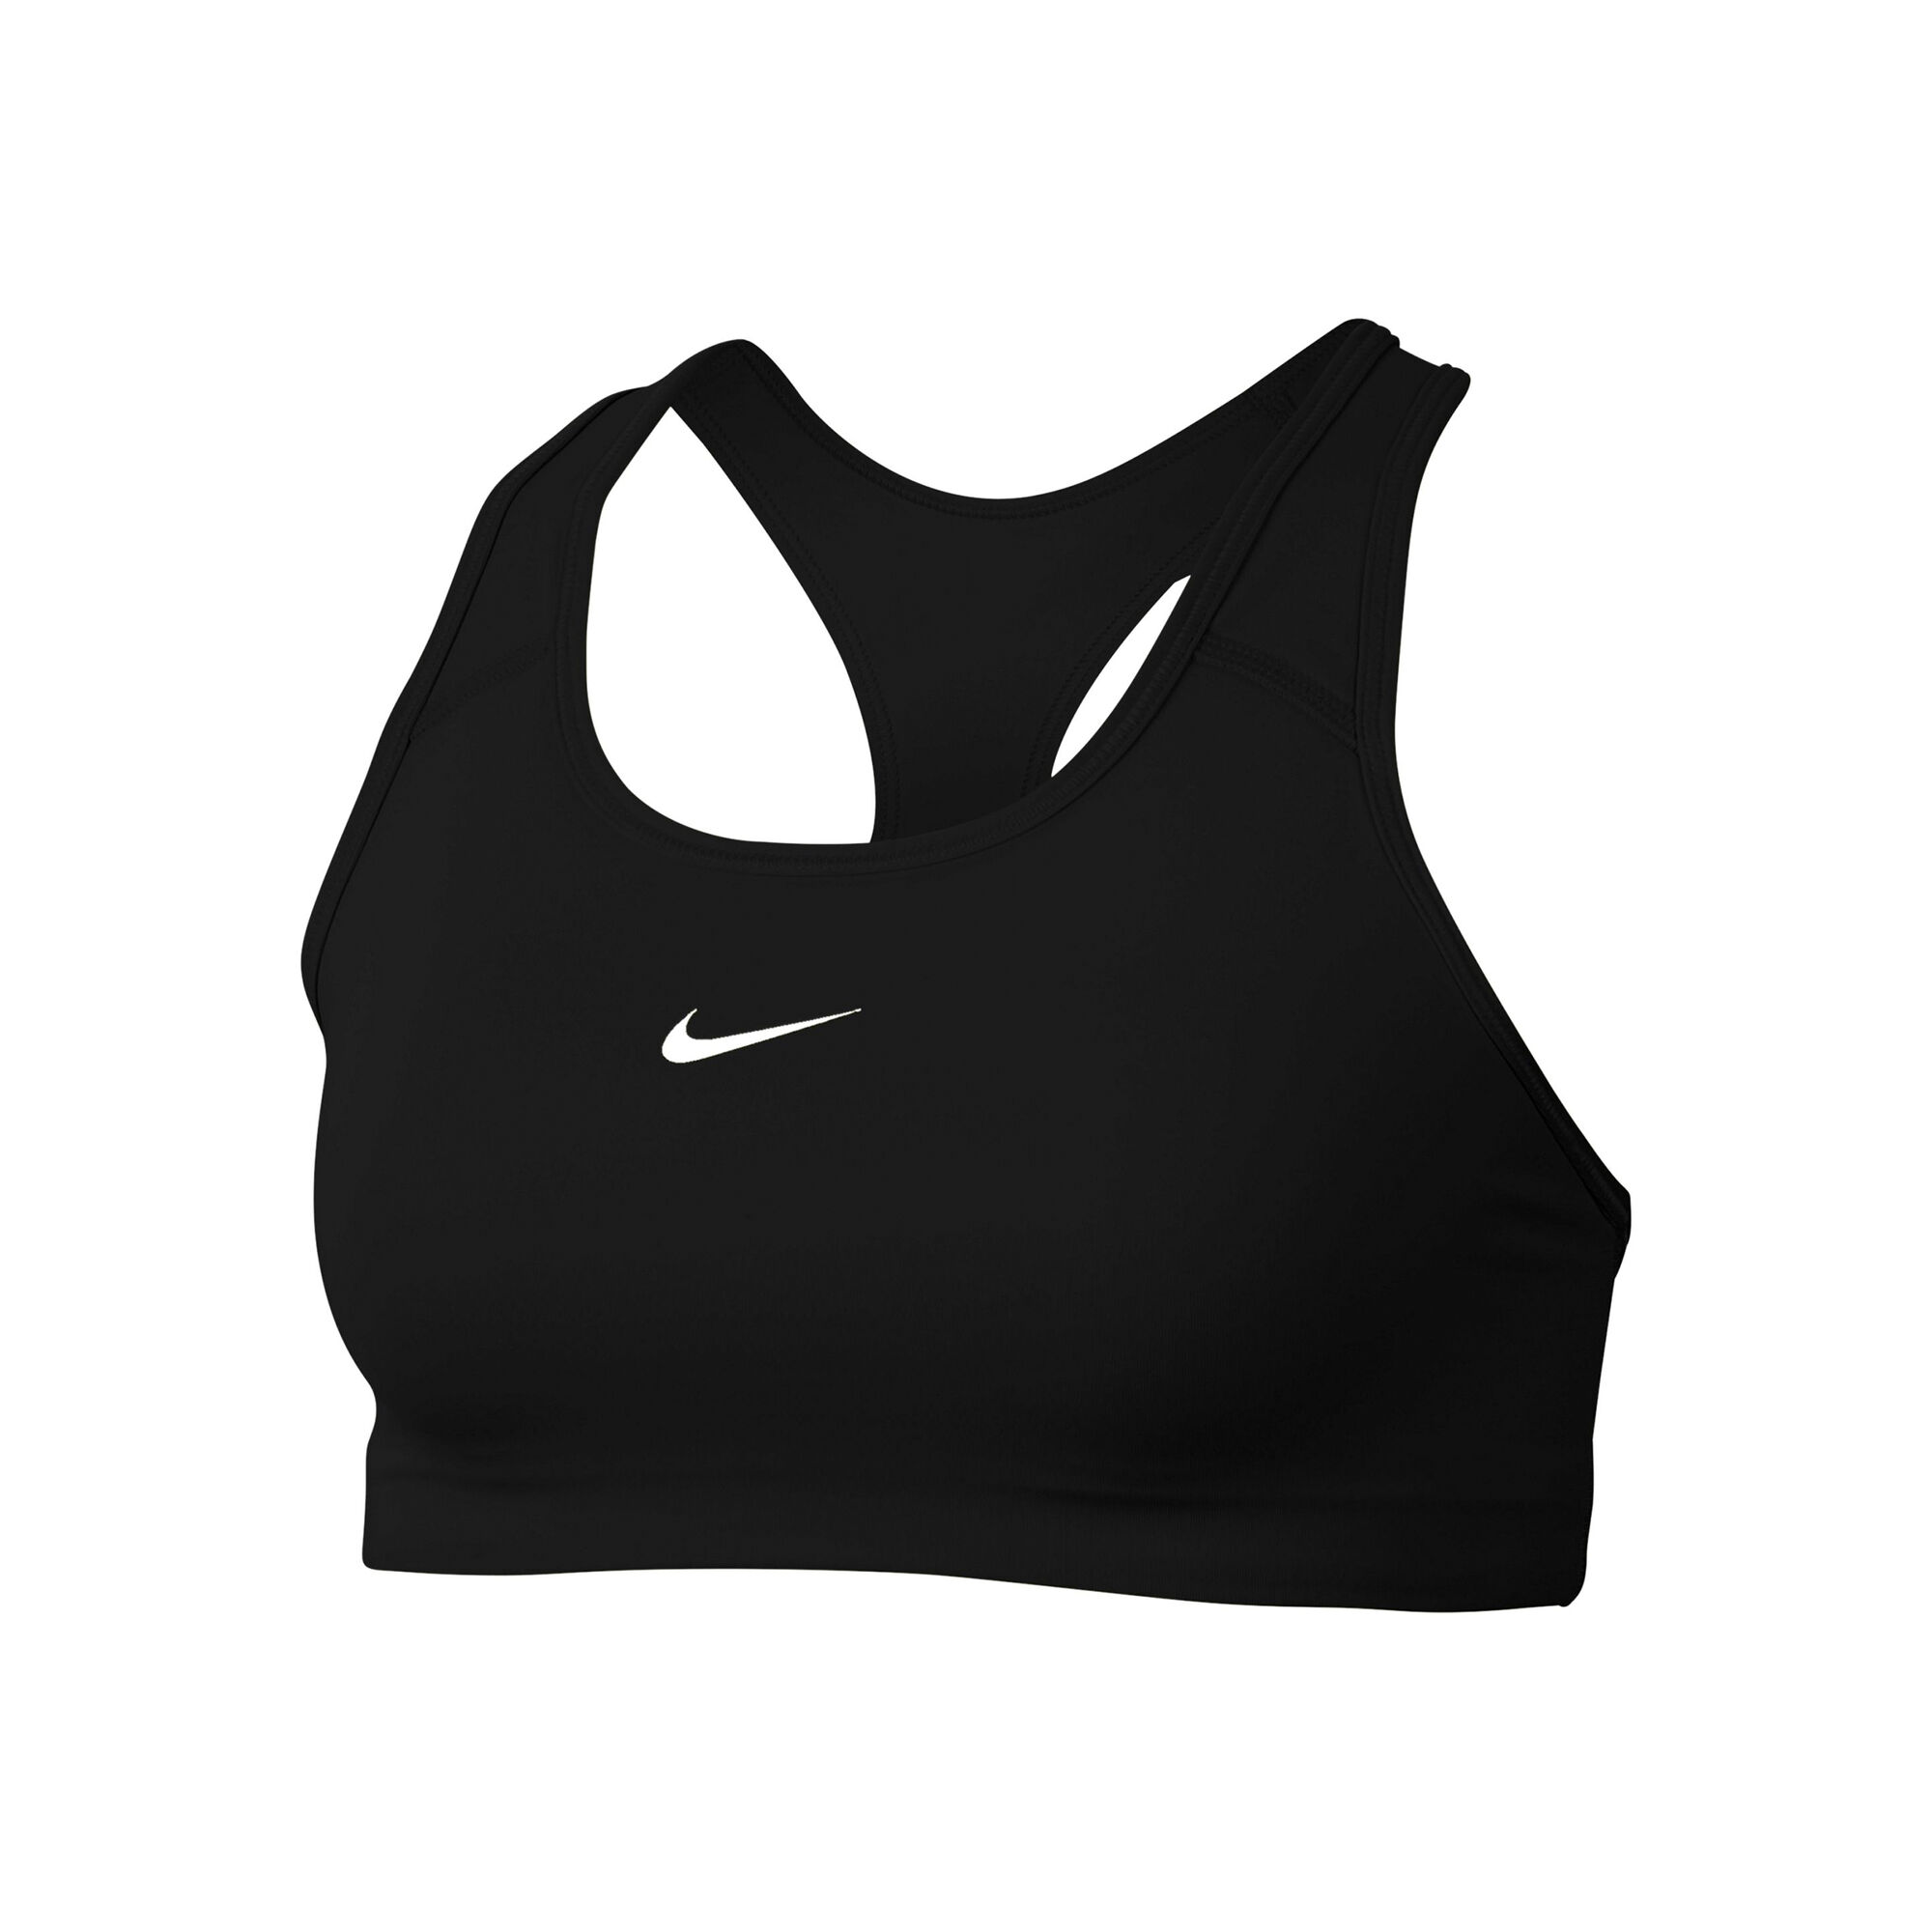 Buy Nike Padded Sports Bras Women Black, White online